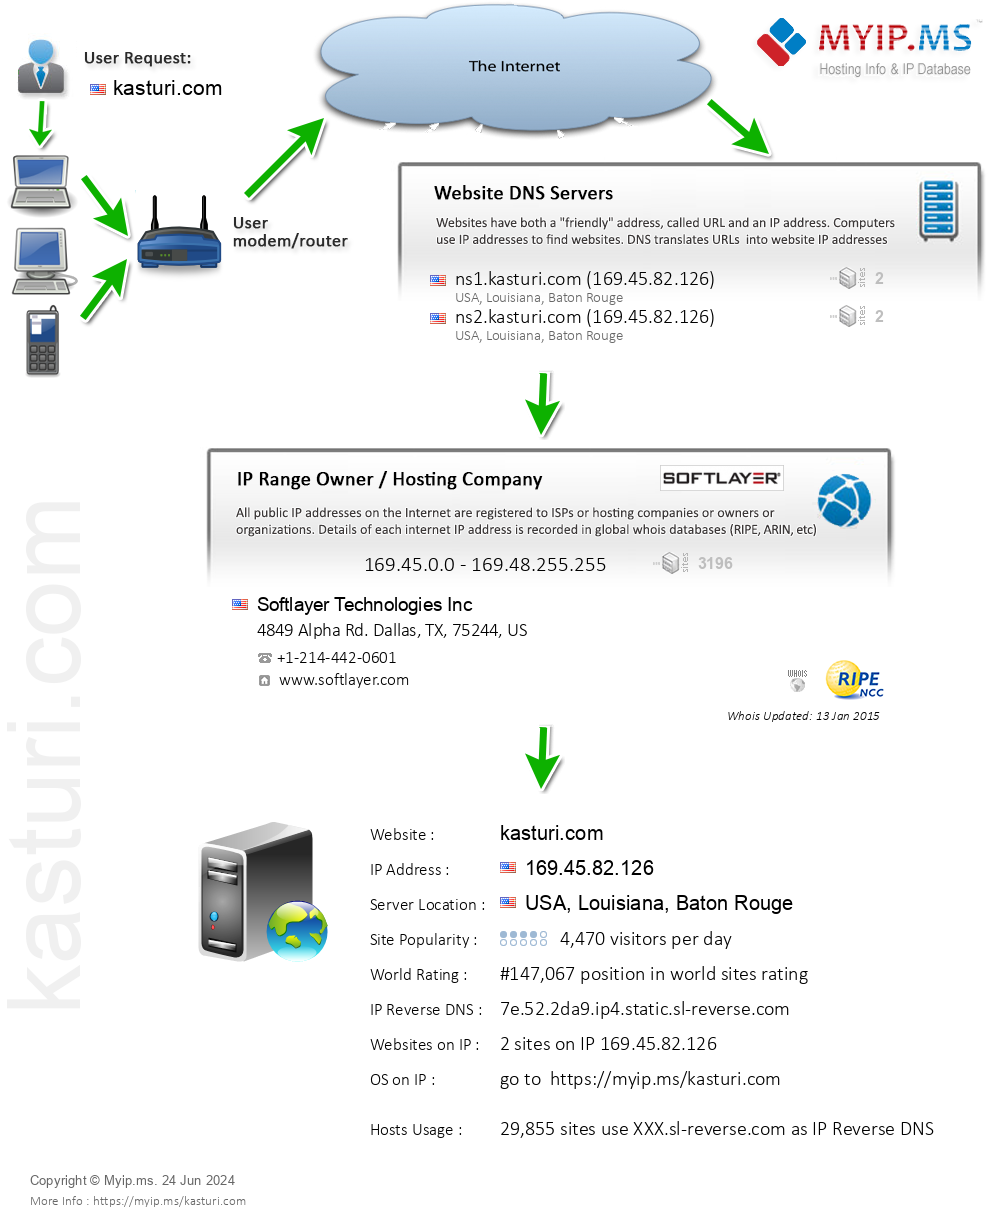 Kasturi.com - Website Hosting Visual IP Diagram